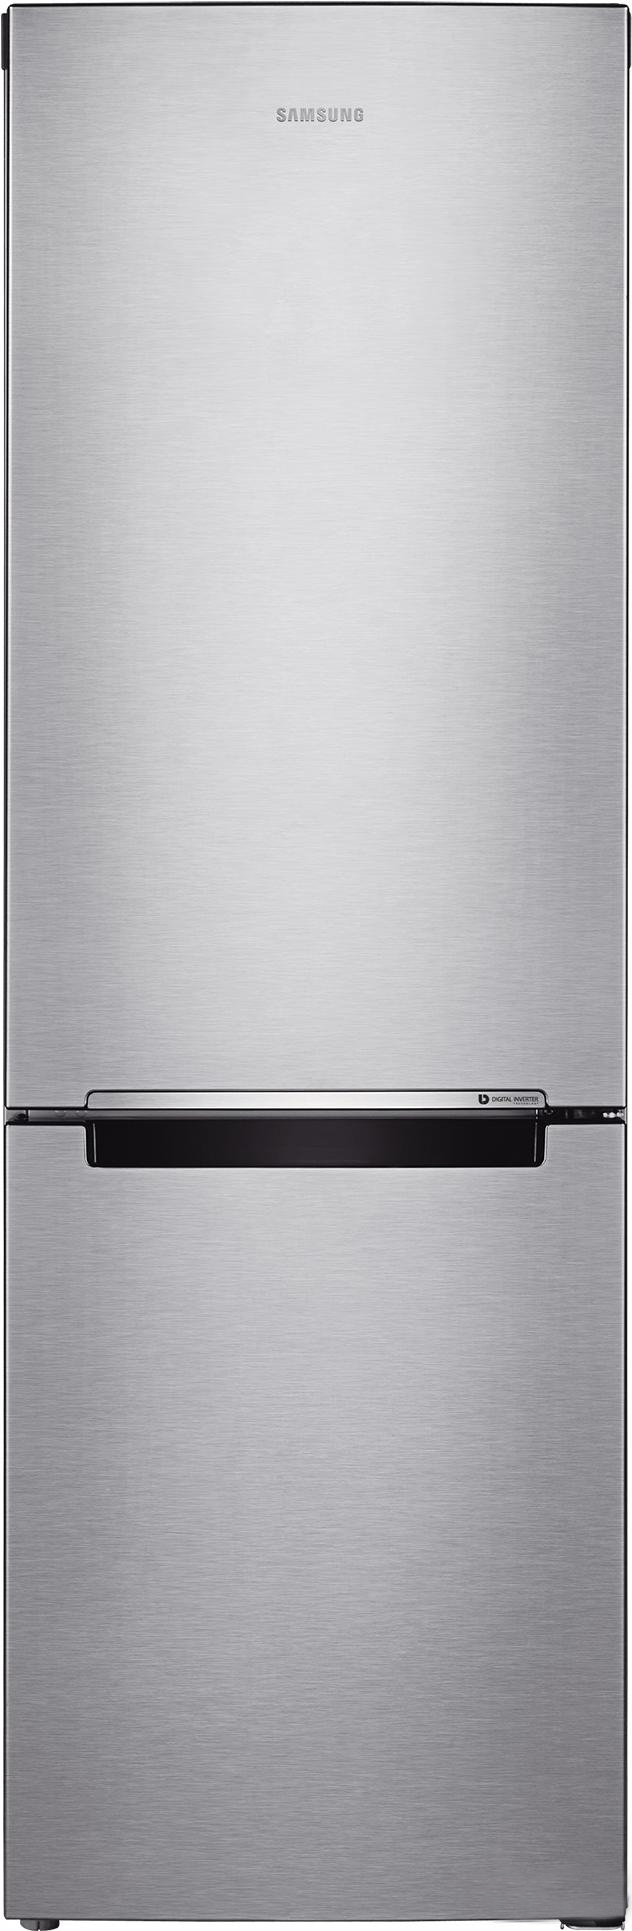 Двухкамерный холодильник SAMSUNG RB30A30N0SA/WT